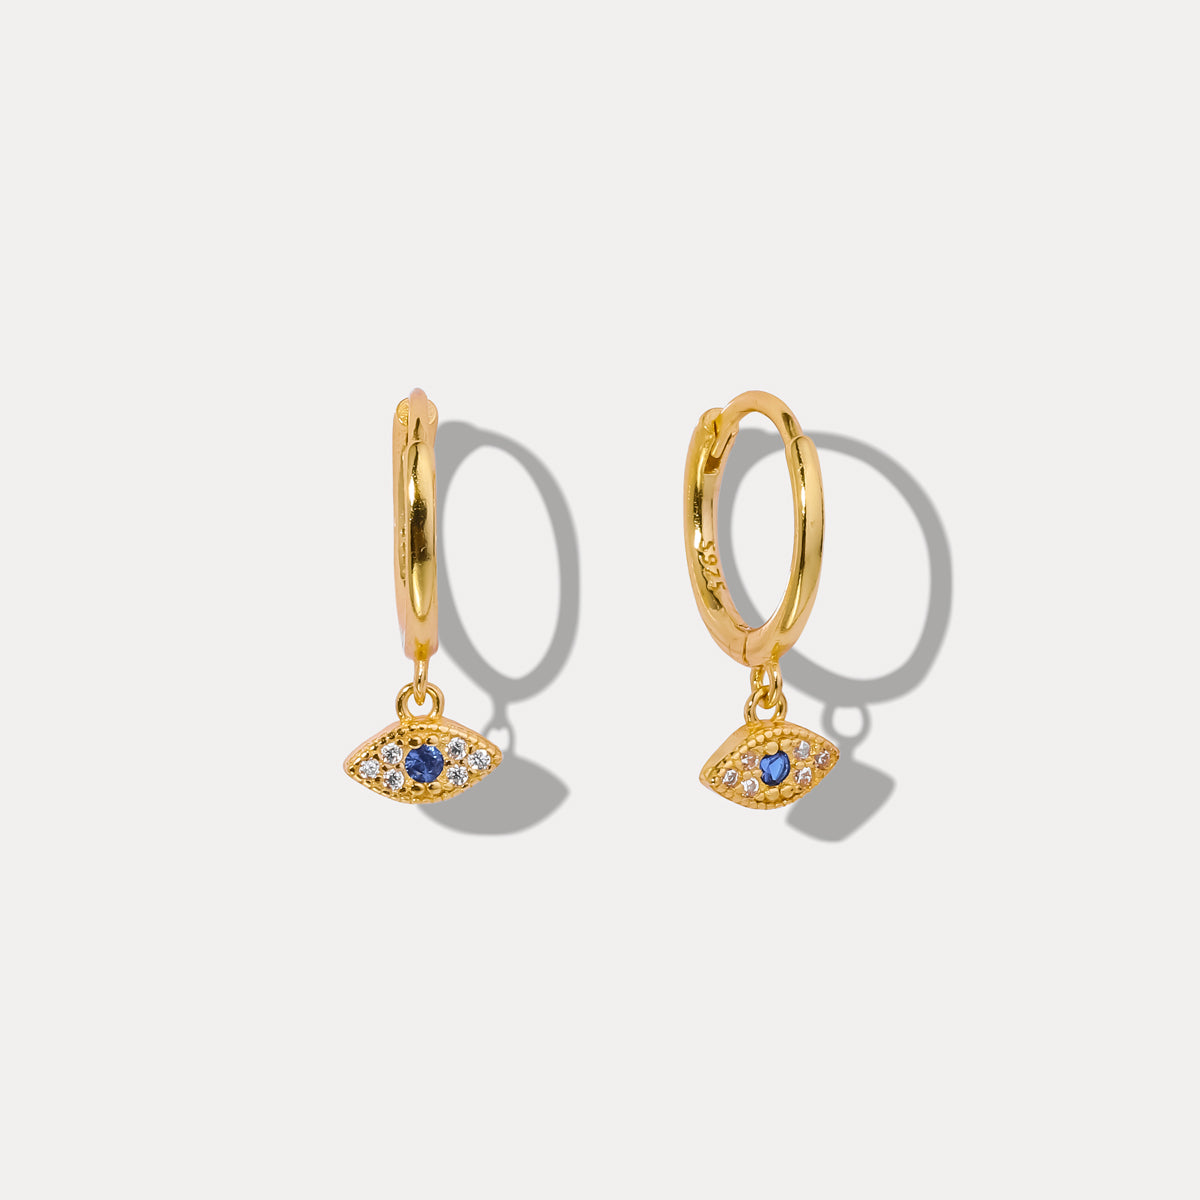 Selenichast sapphire eyes diamond drop hoops earrings